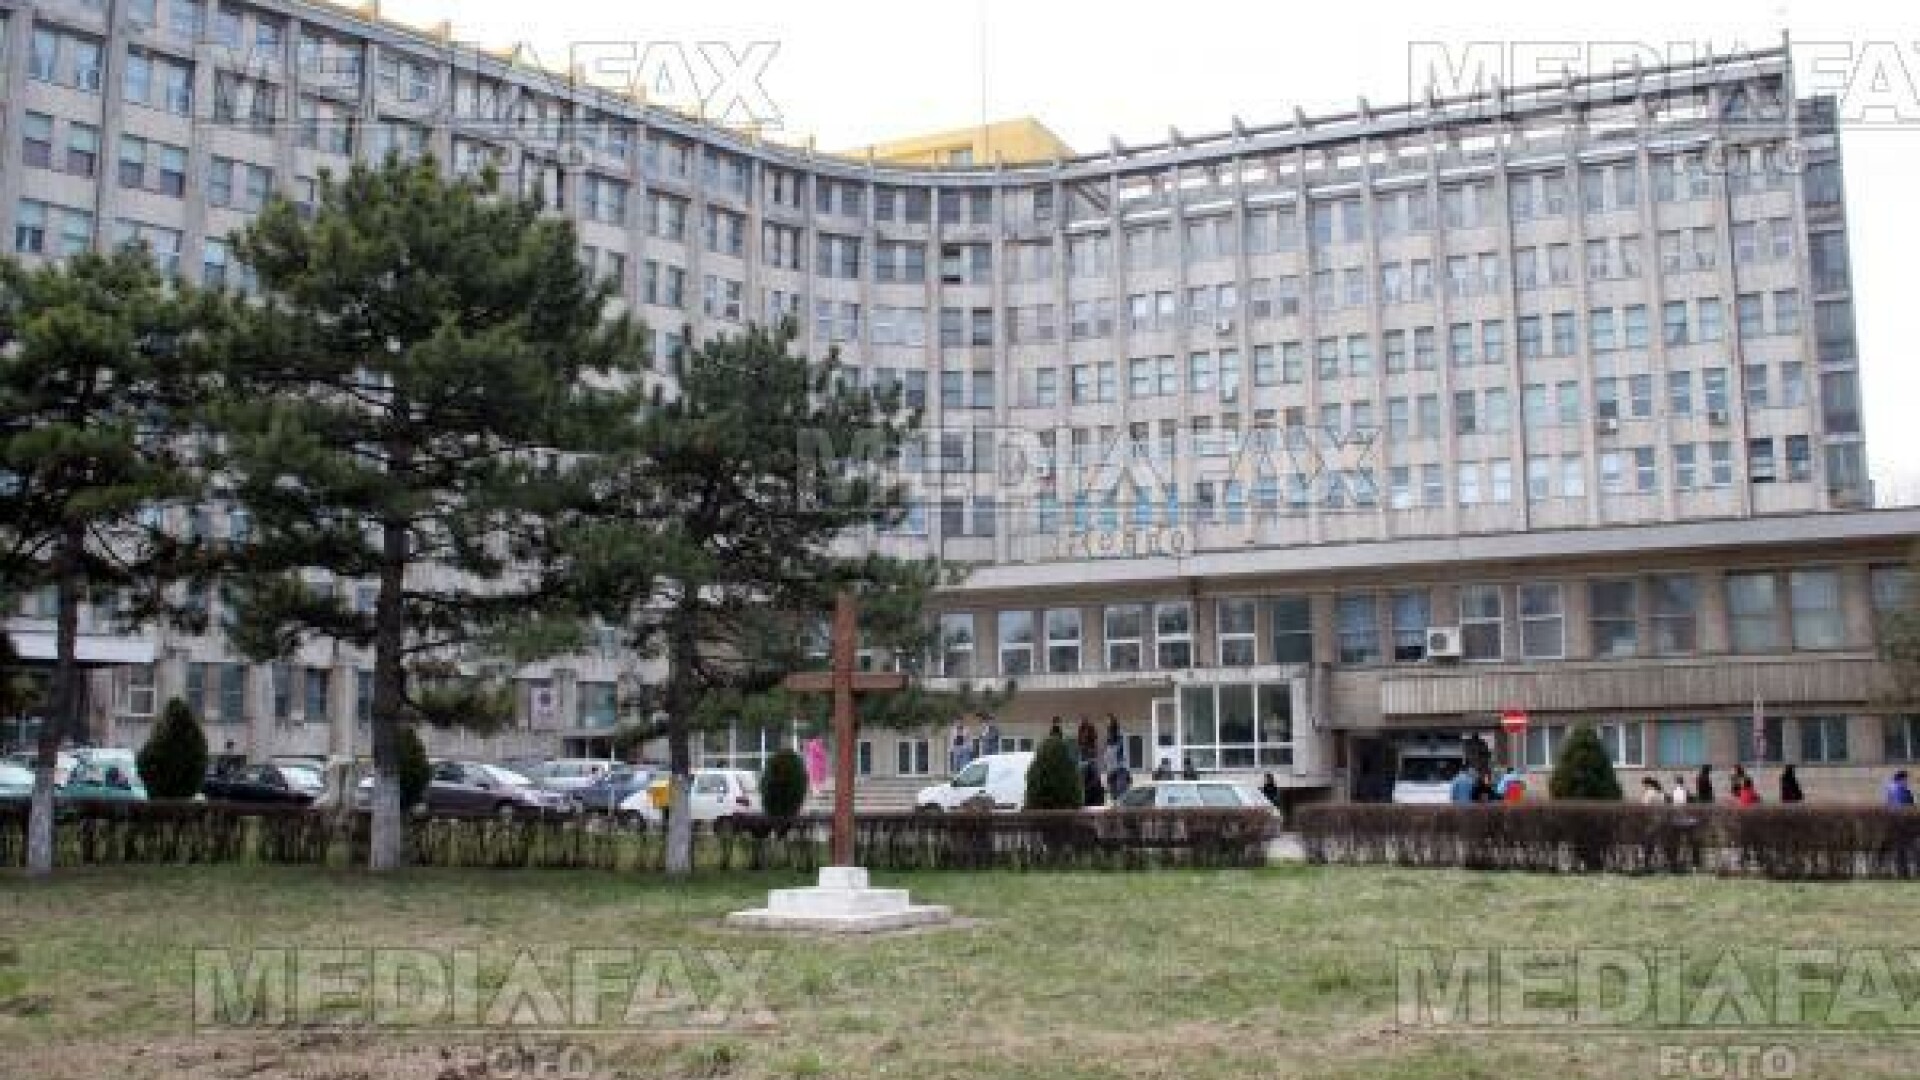 Acuzatii de malpraxis la Spitalul judetean Constanta